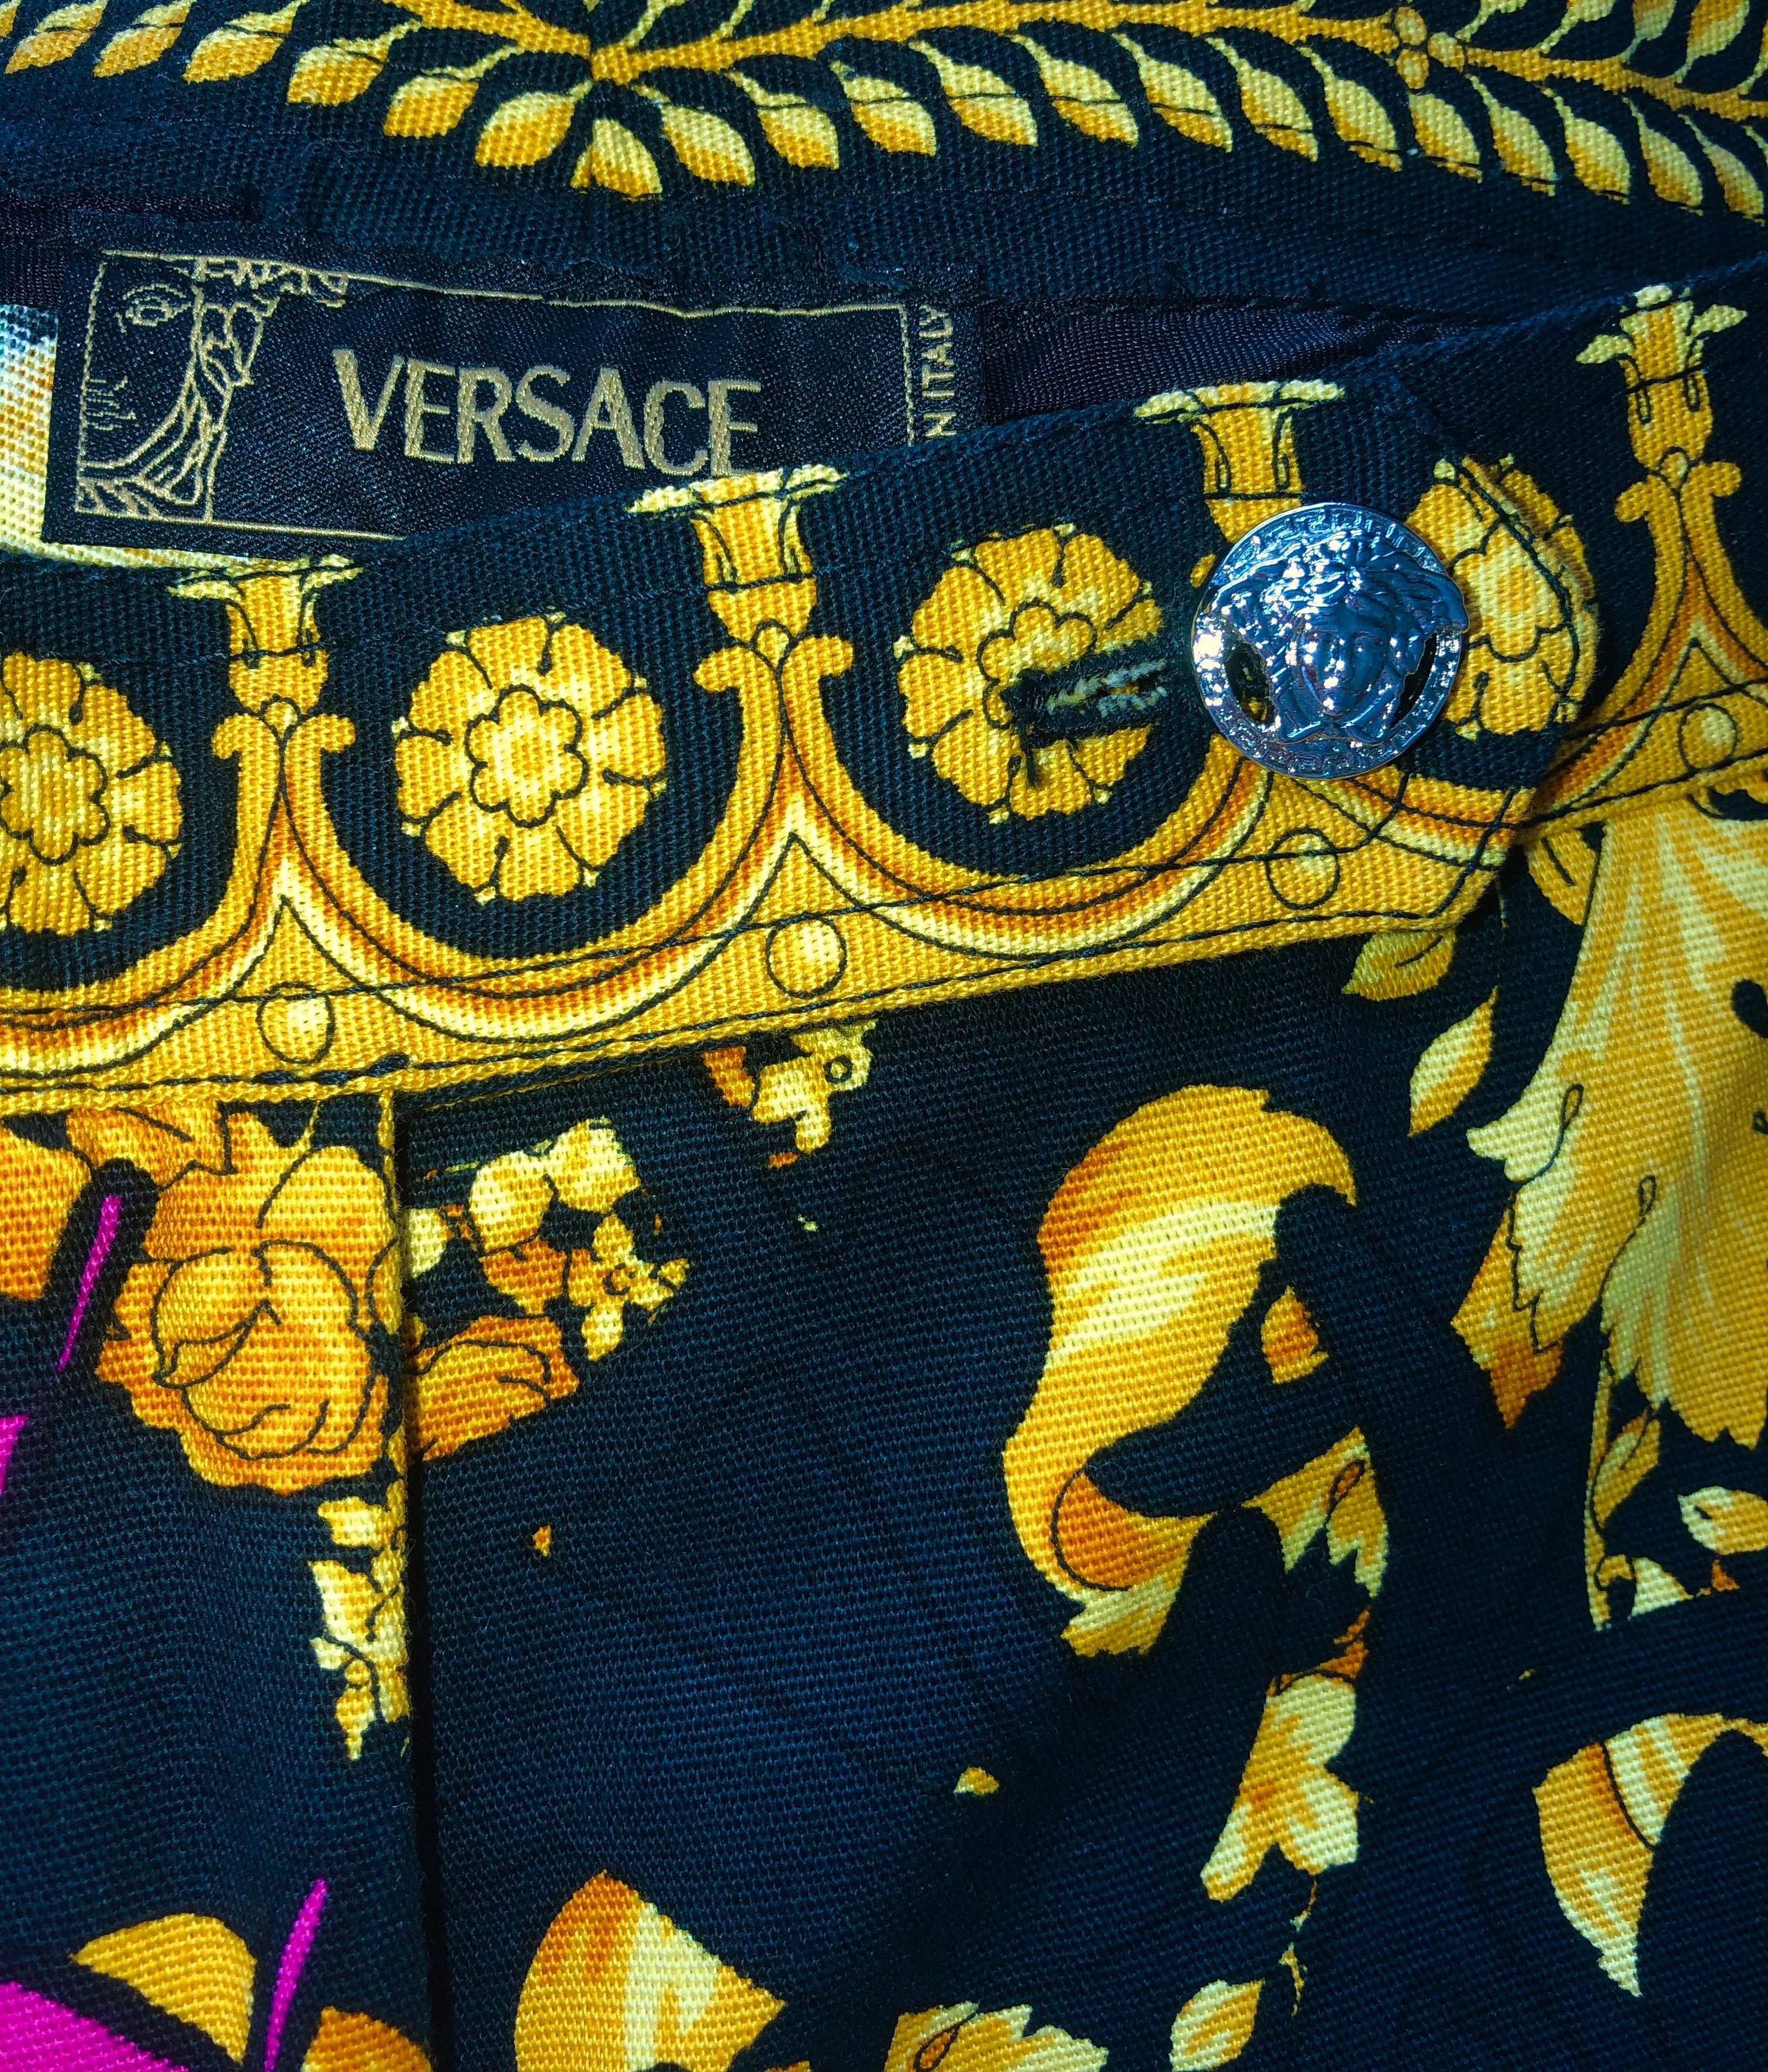 Versace Colorful Signature Medusa Print Graffiti Pants Racer Top Ensemble Suit For Sale 1